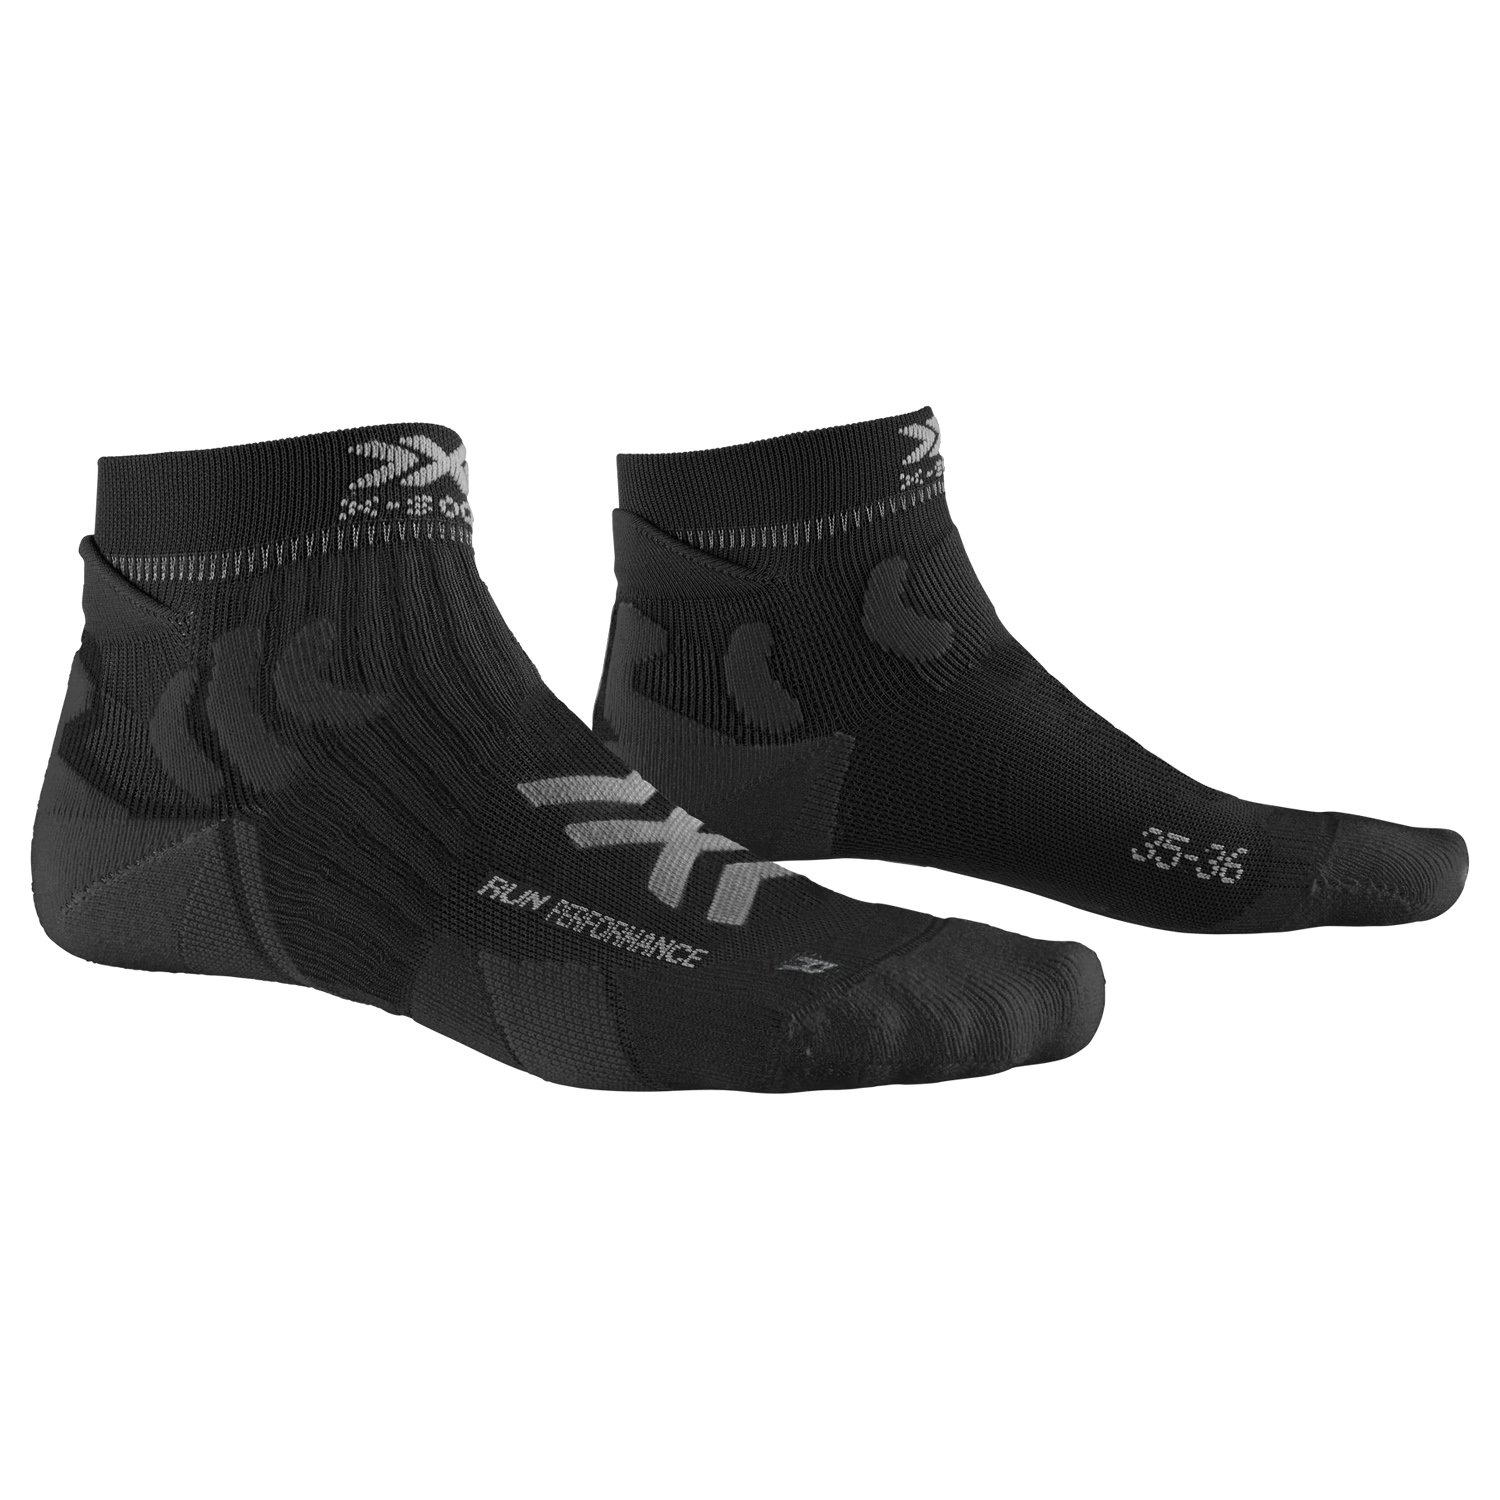 X-Bionic X-Socks:Registered: Run Performance 4.0 Erkek Çorap - Siyah - 1